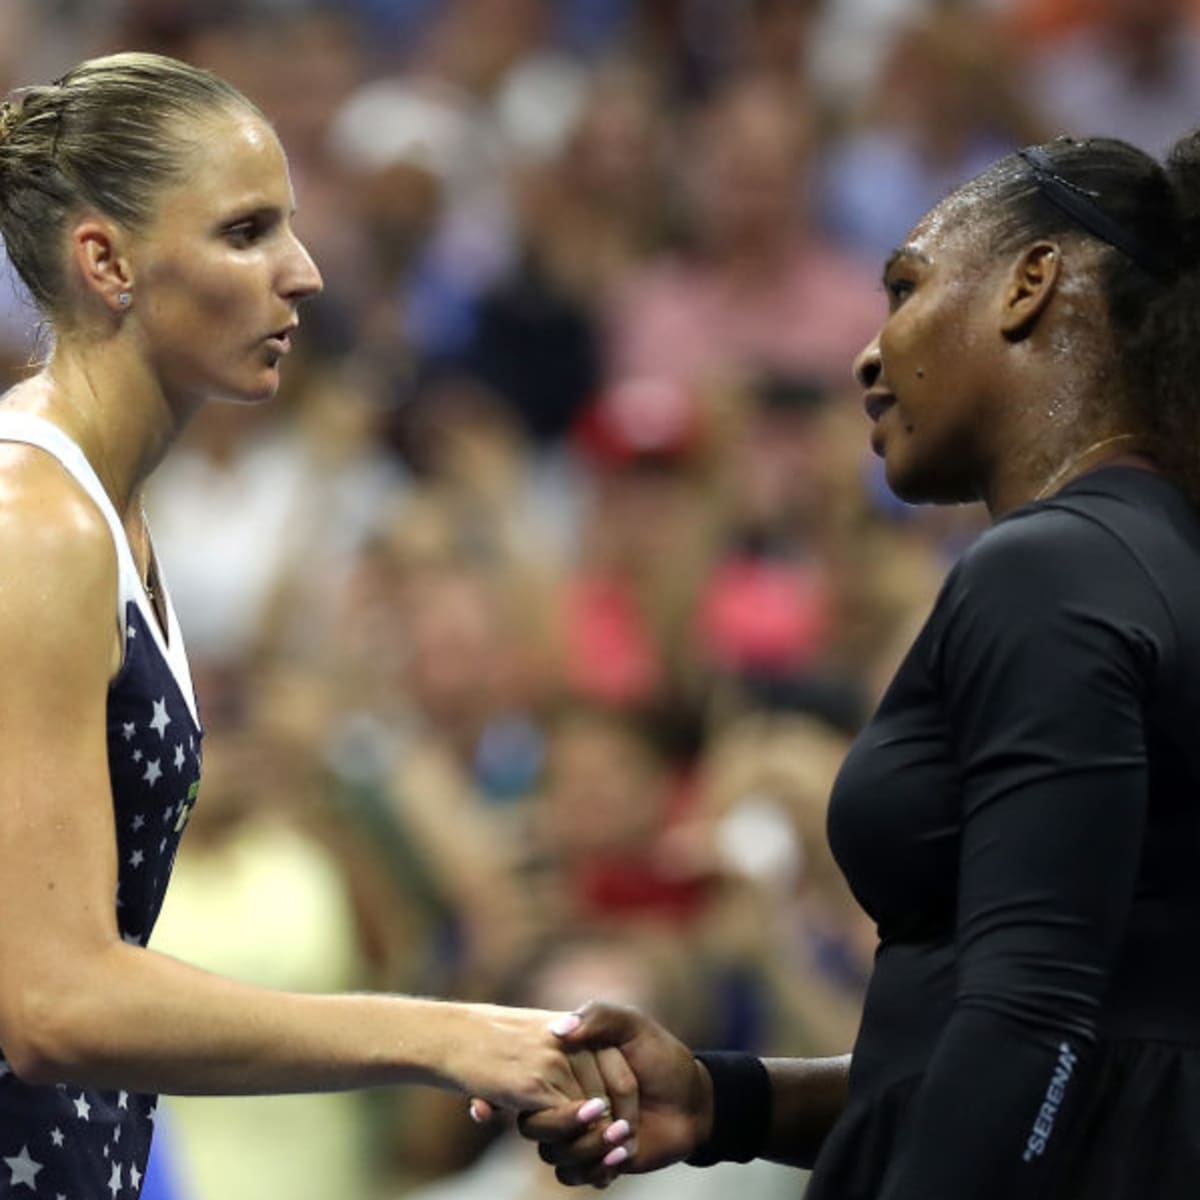 Serena Williams vs Karolina Pliskova Austalian Open live stream, TV channel